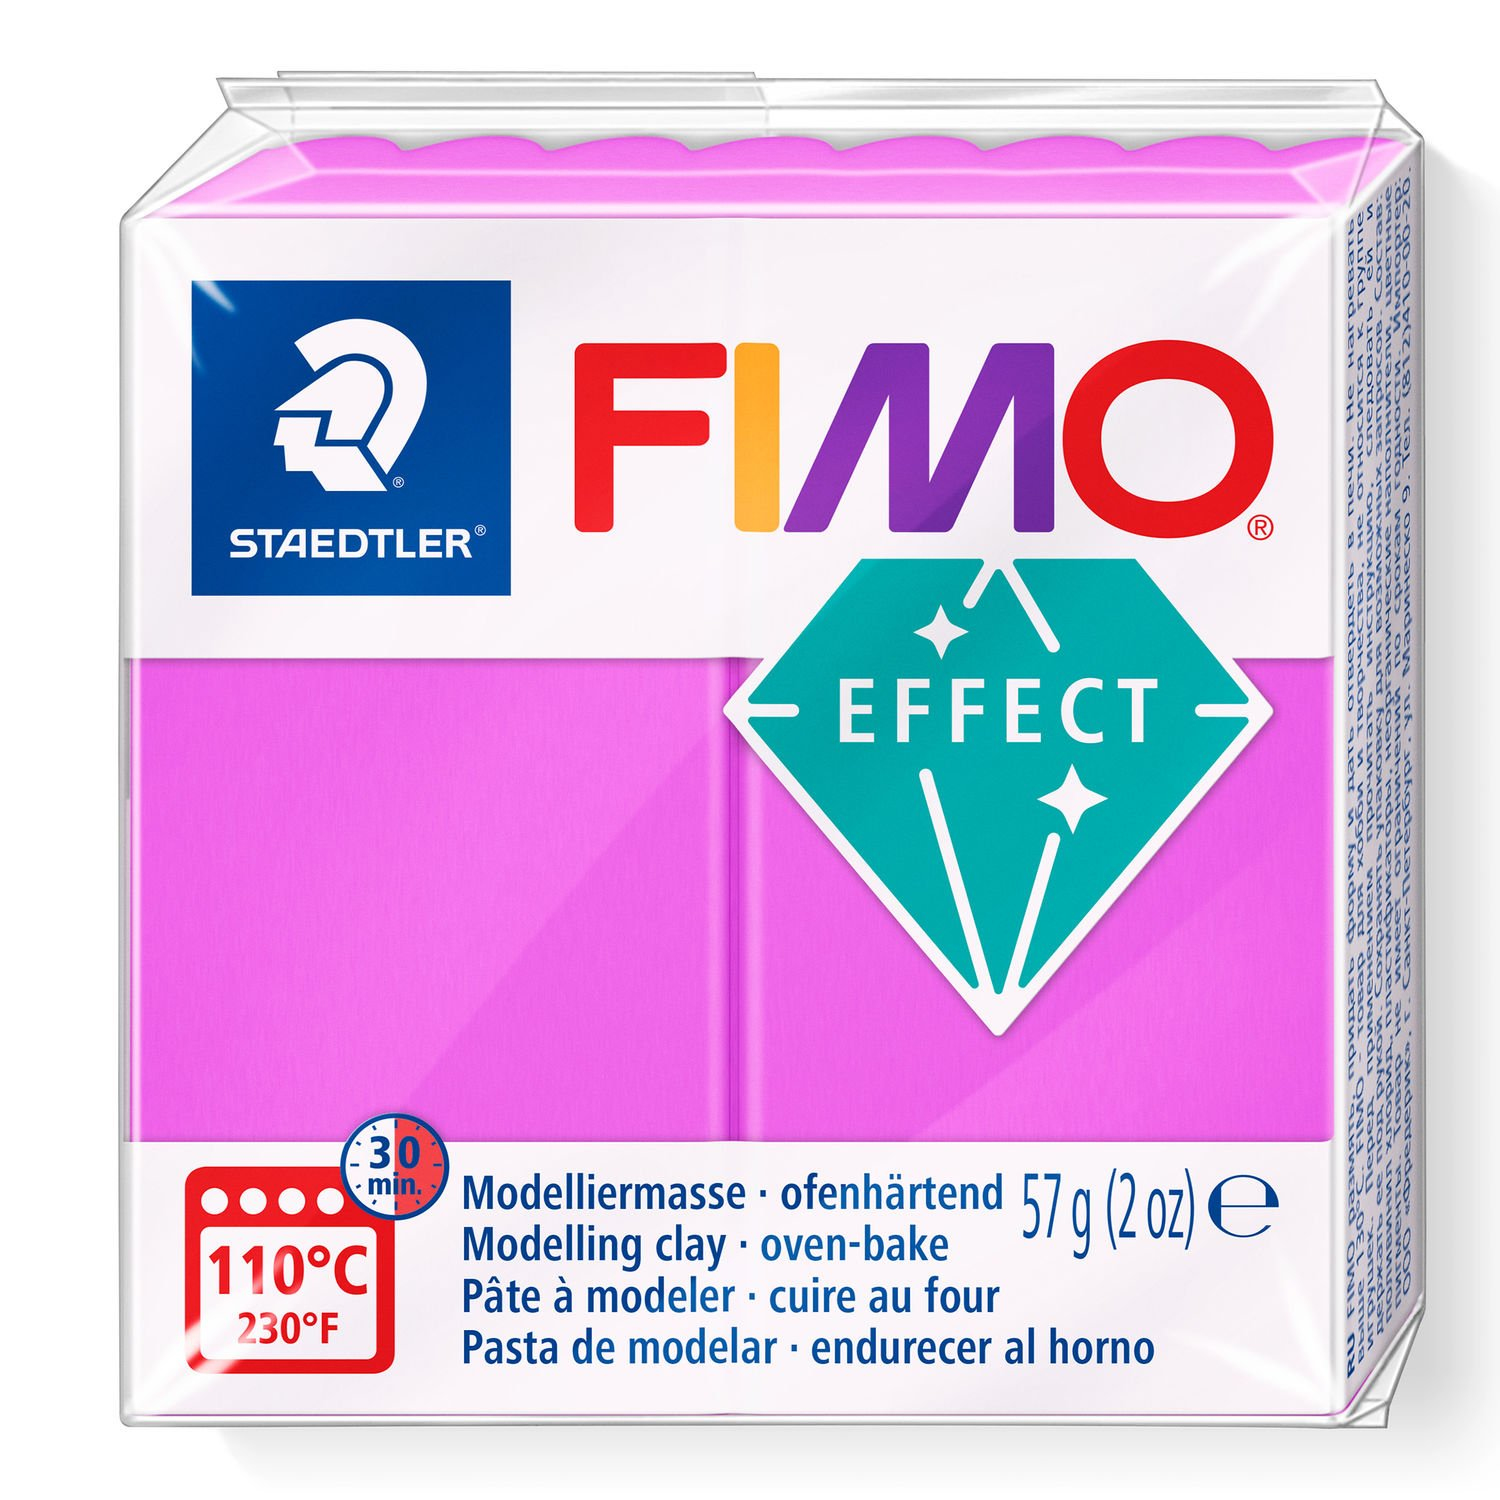 STAEDTLER FIMO 8010 - Knetmasse - Violett - Erwachsene - 1 Stück(e) - Neon purple - 1 Farben